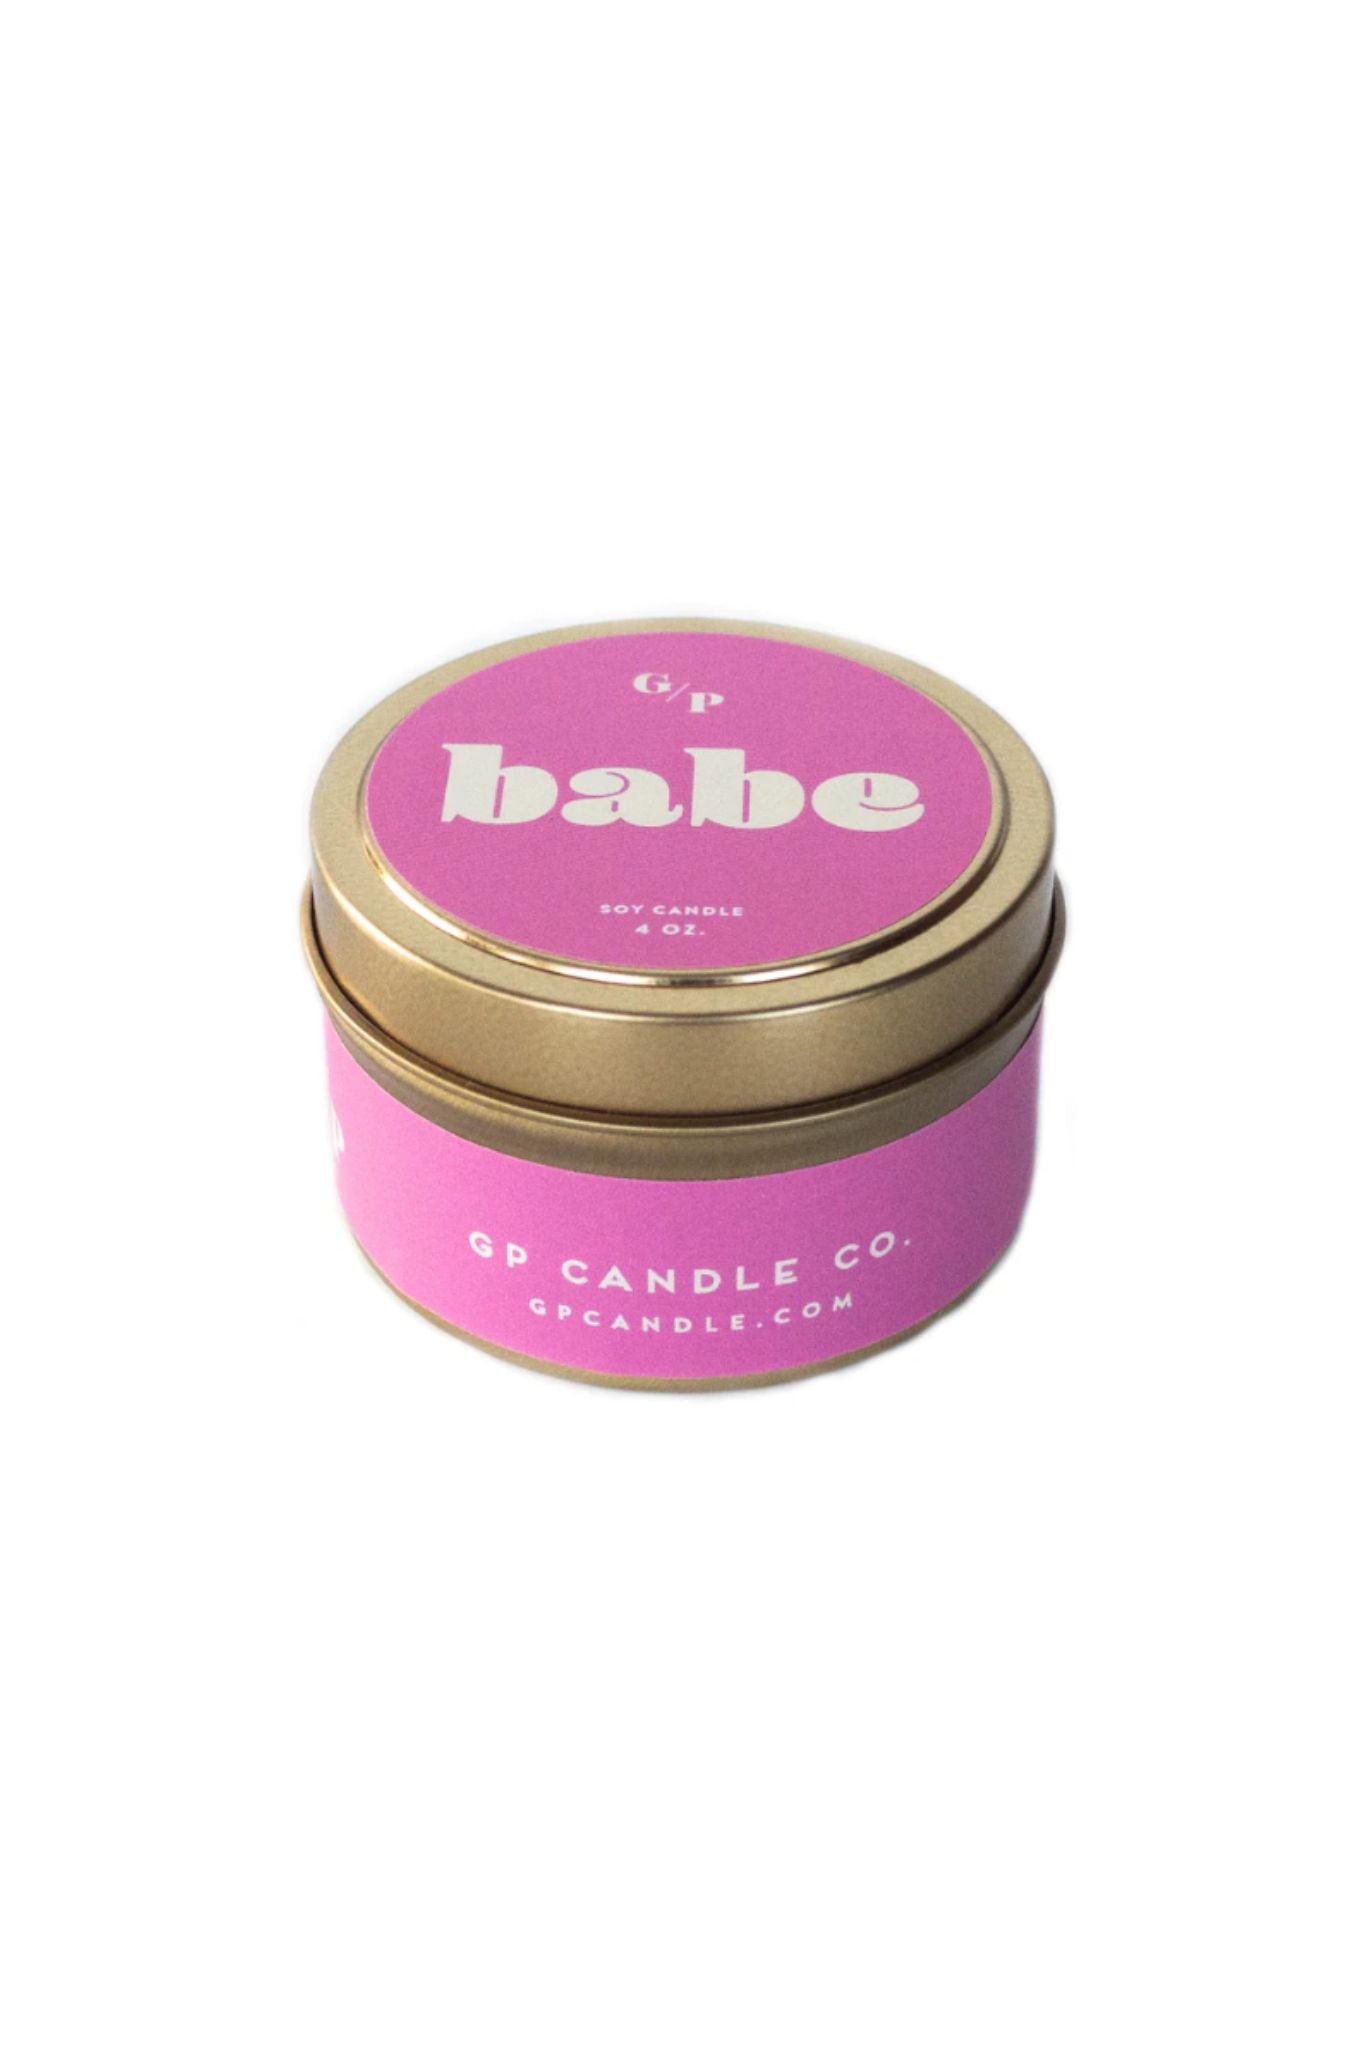 Babe Candle Tin (4oz)